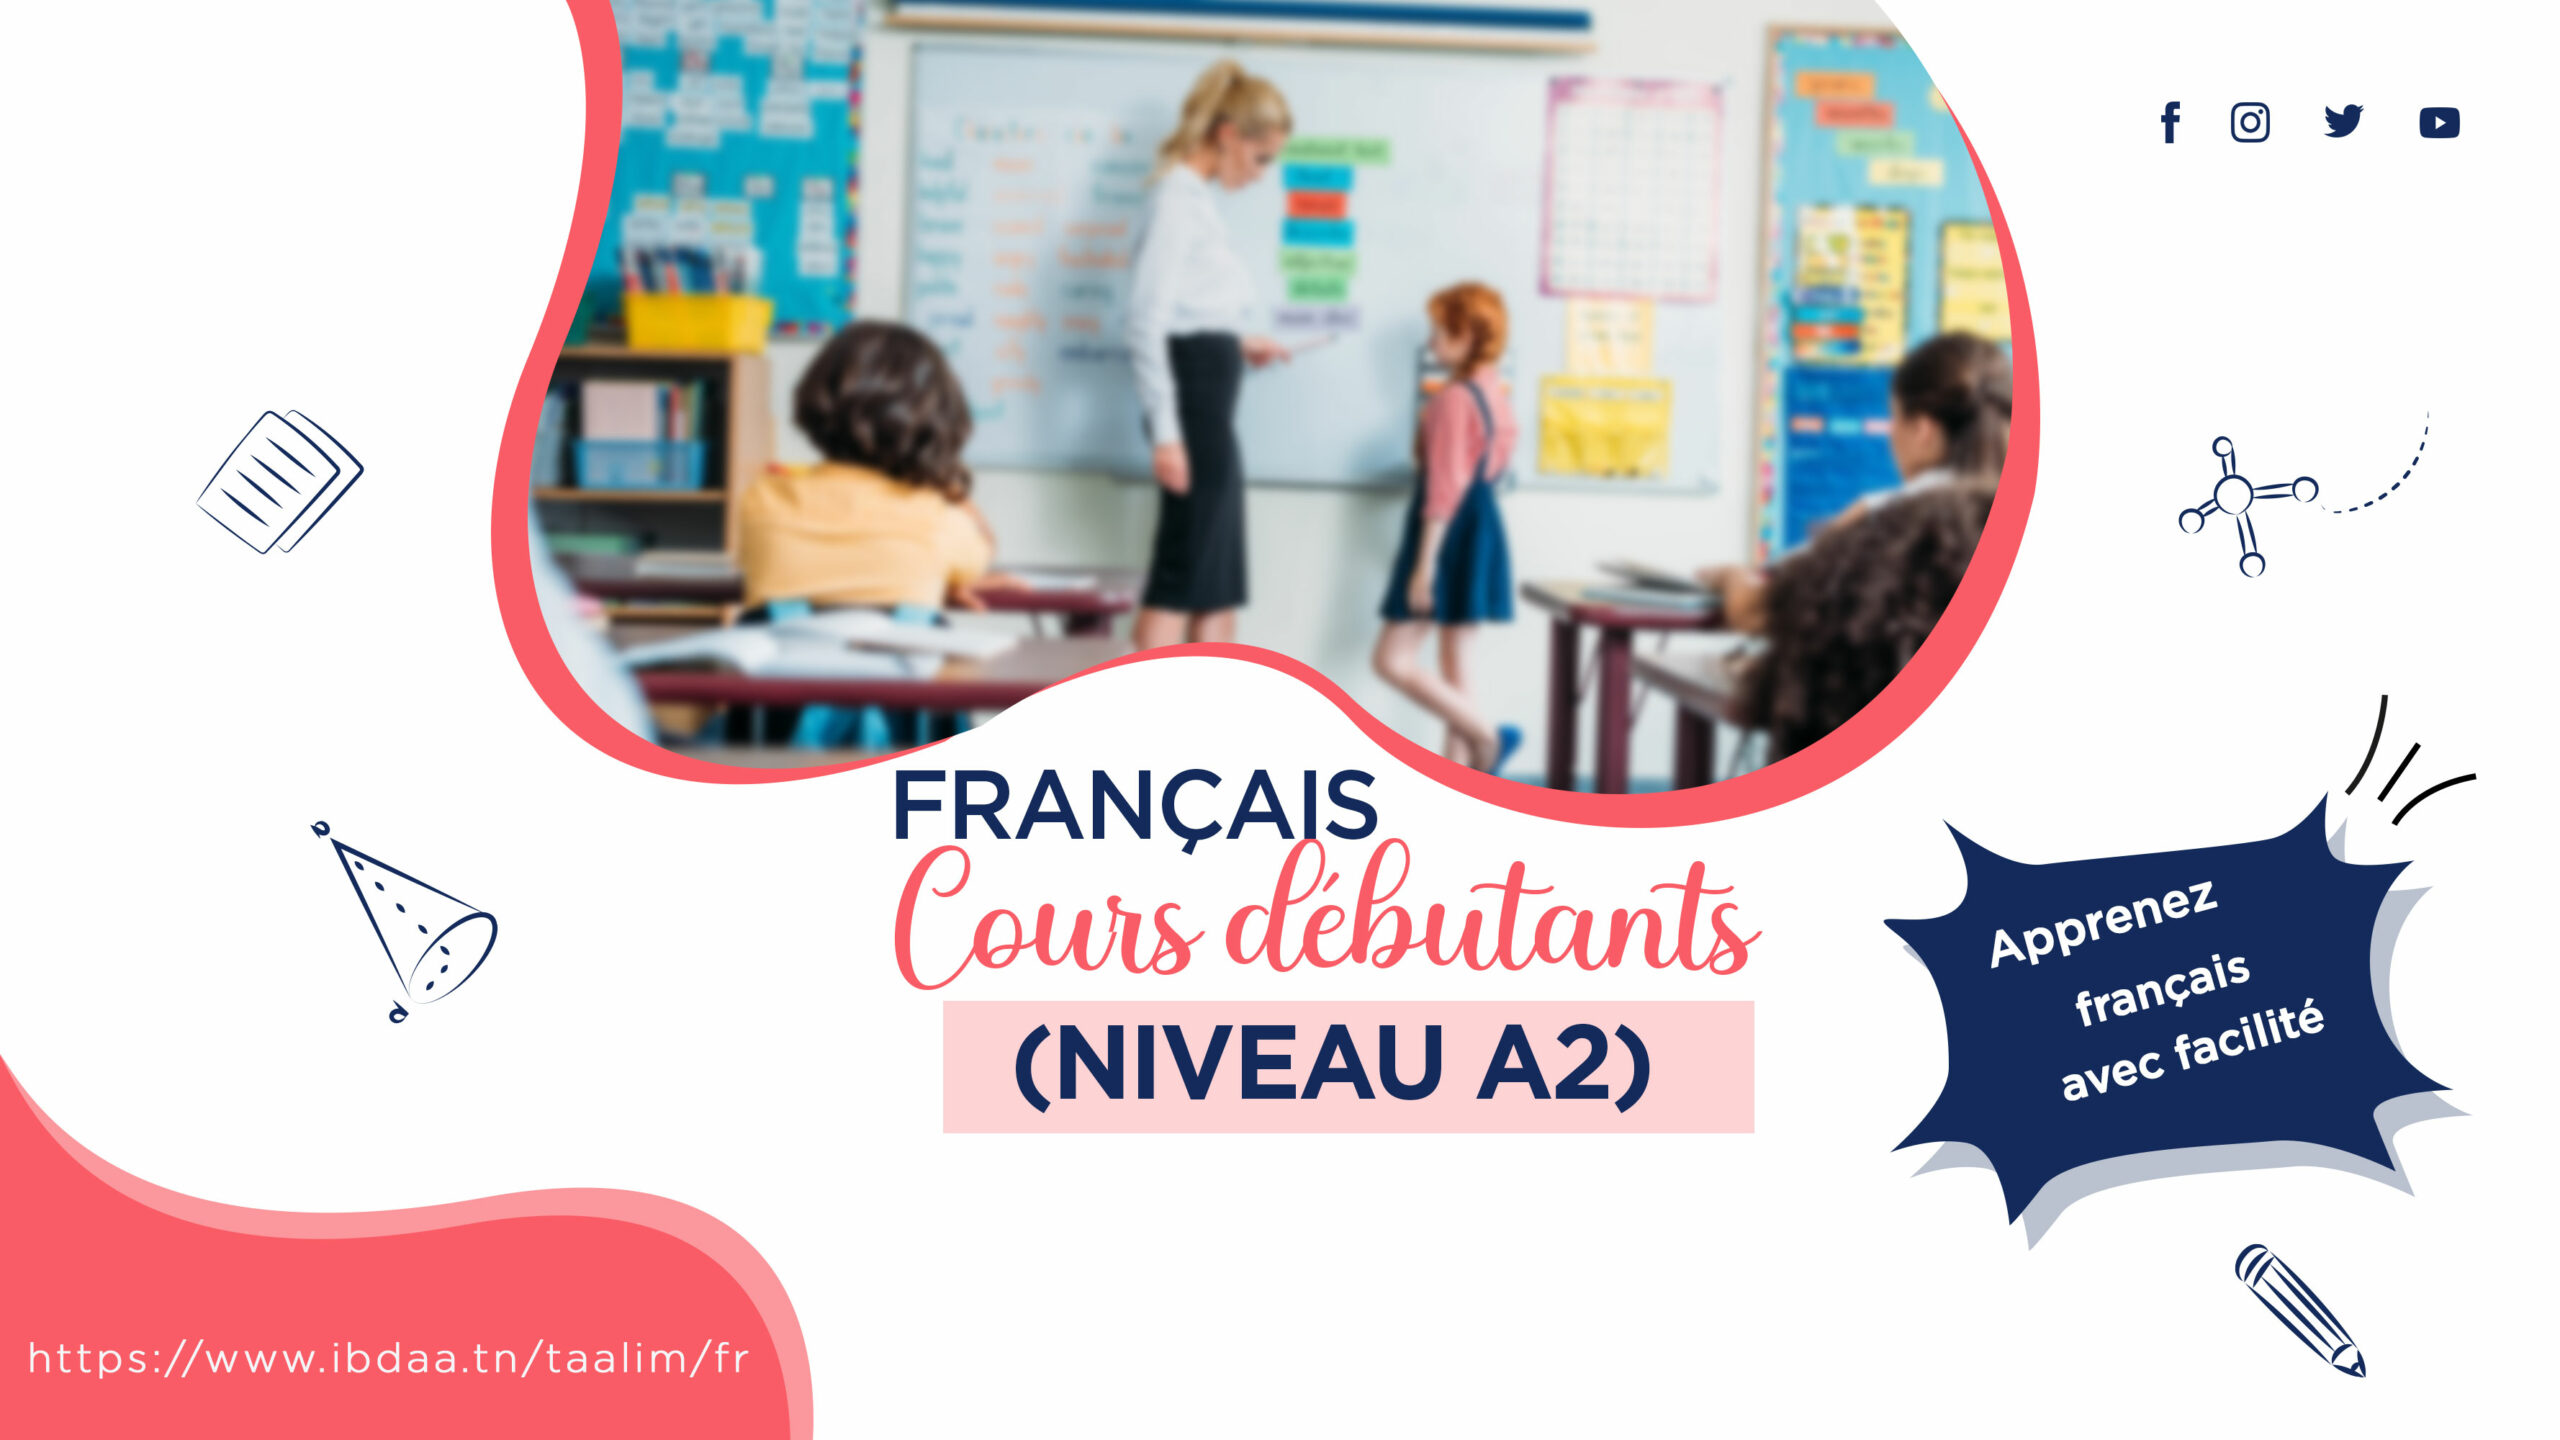 تدريب اللغة الفرنسية المبتدئين (المستوى A2)